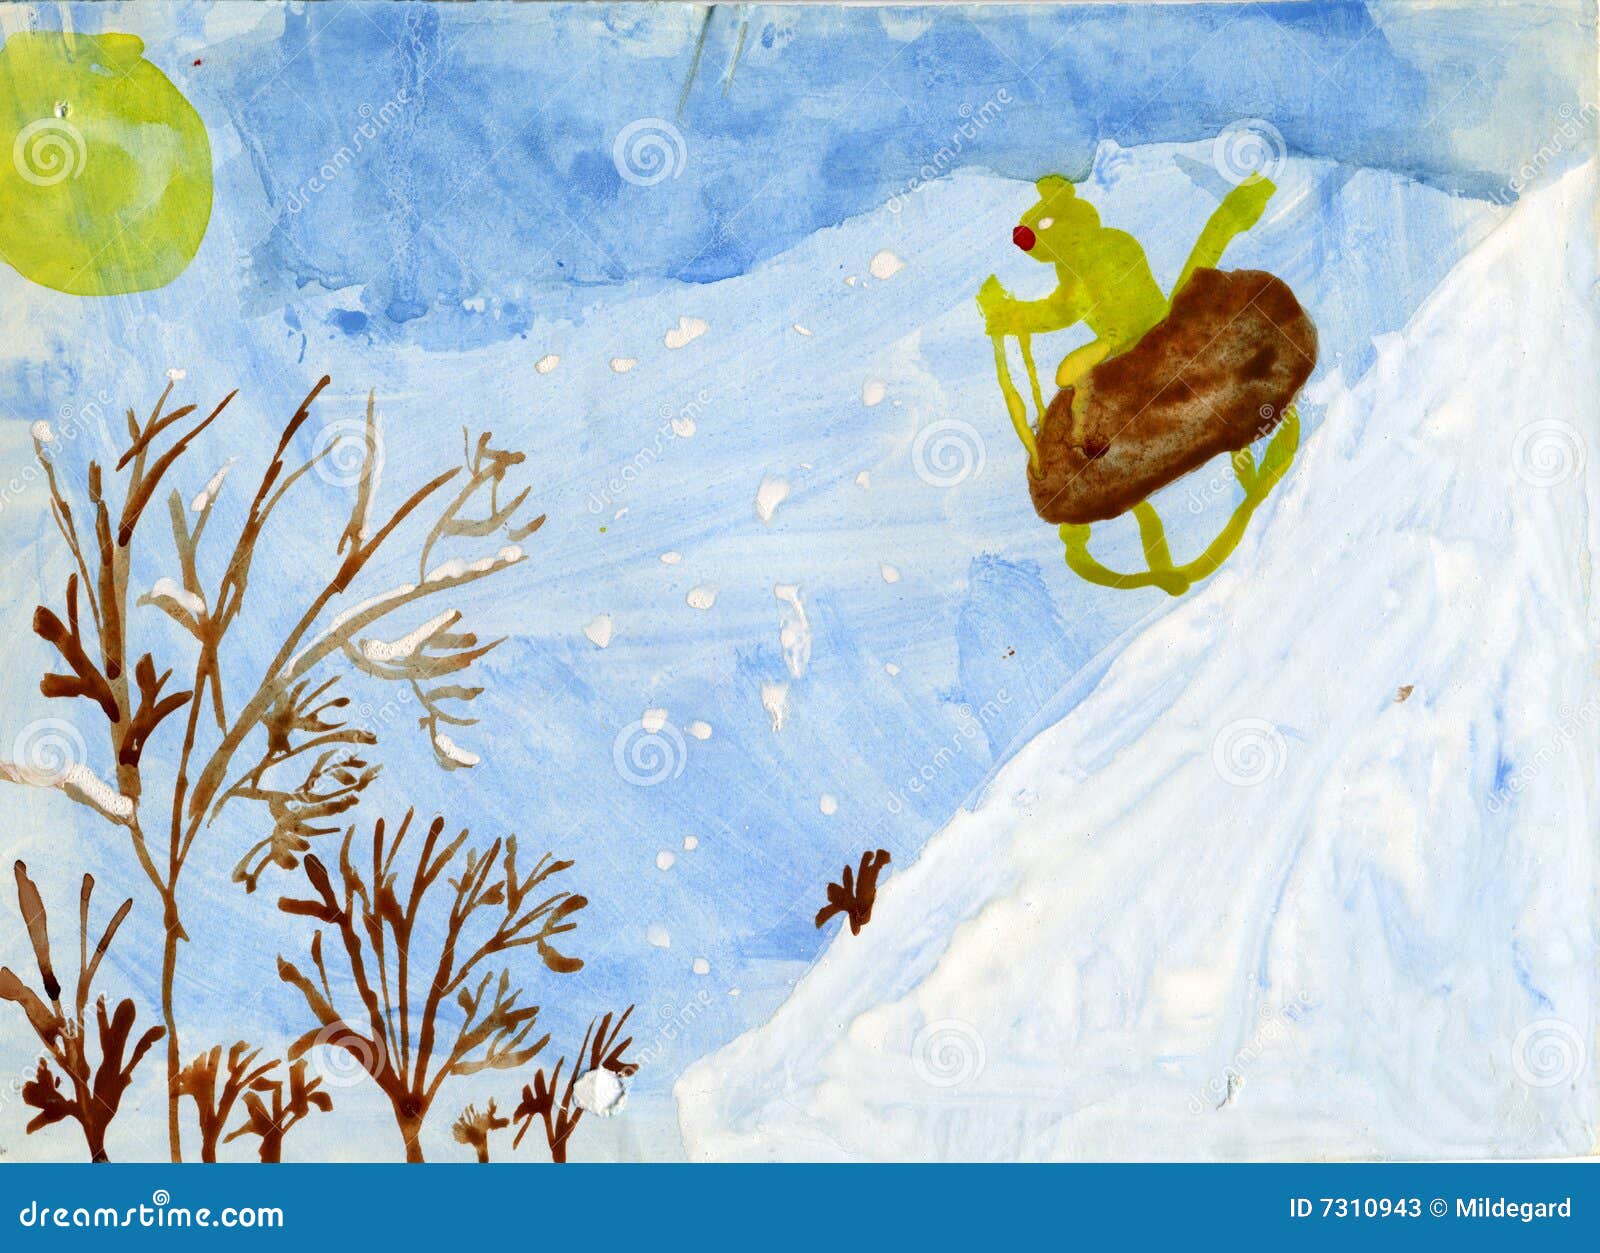 Chat conduisant l'étrier. L'enfant de chat conduit le thad neigeux d'étrier d'illustration effectué par côte de gouache